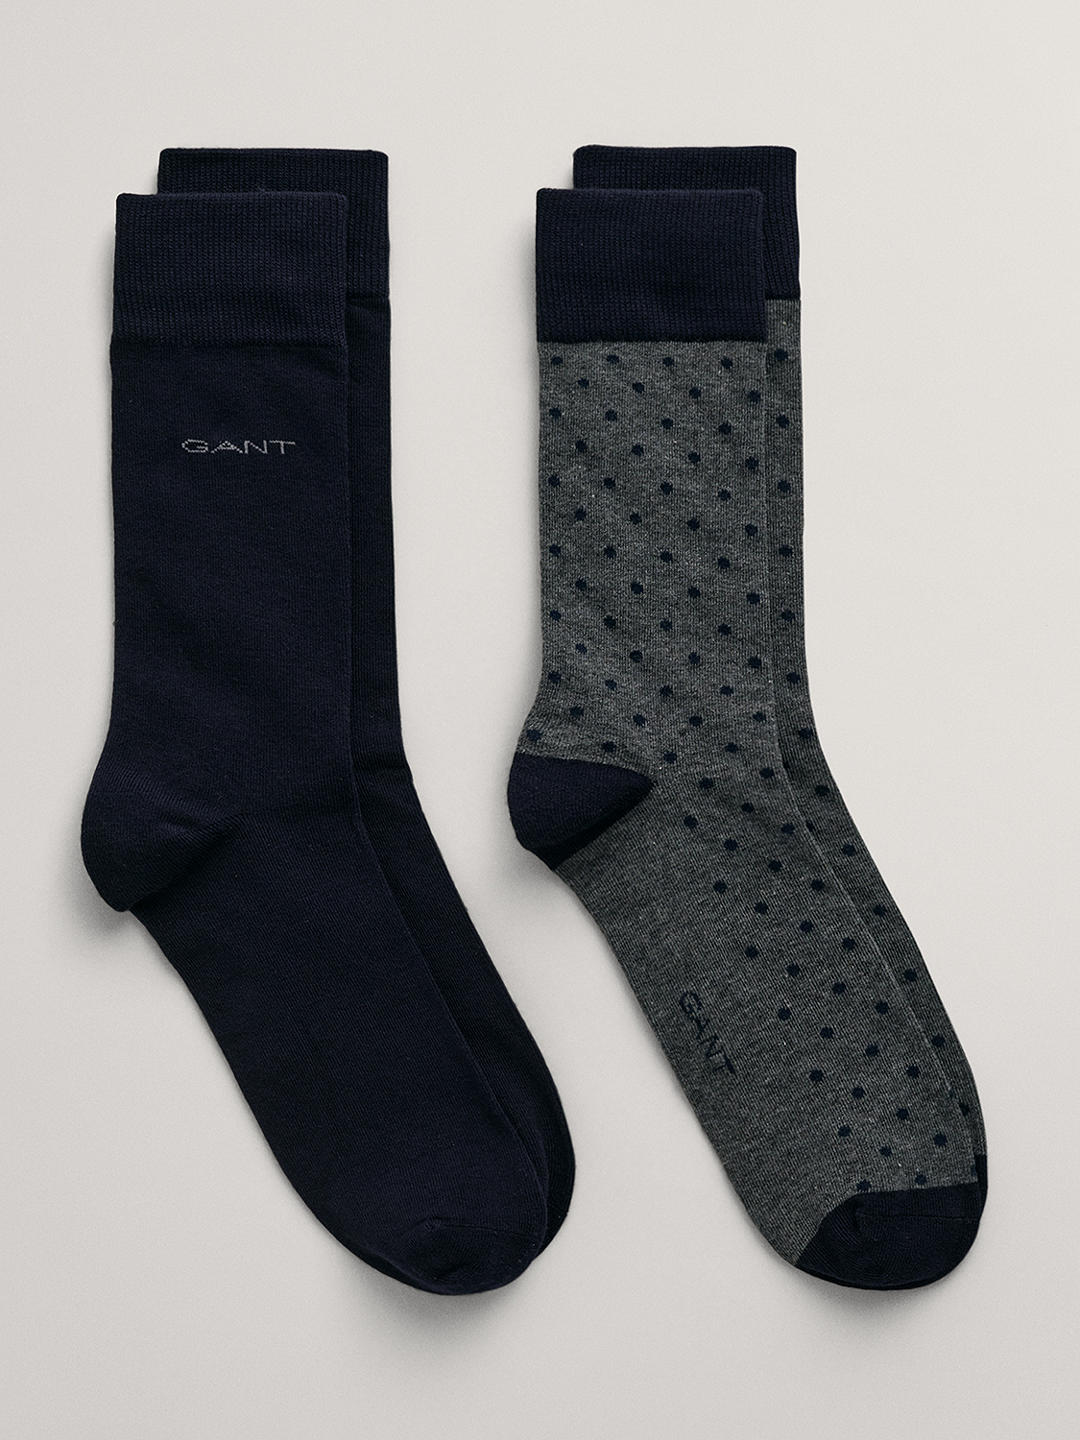 GANT Plain & Polka Dot Cotton Blend Socks, Pack of 2, Charcoal